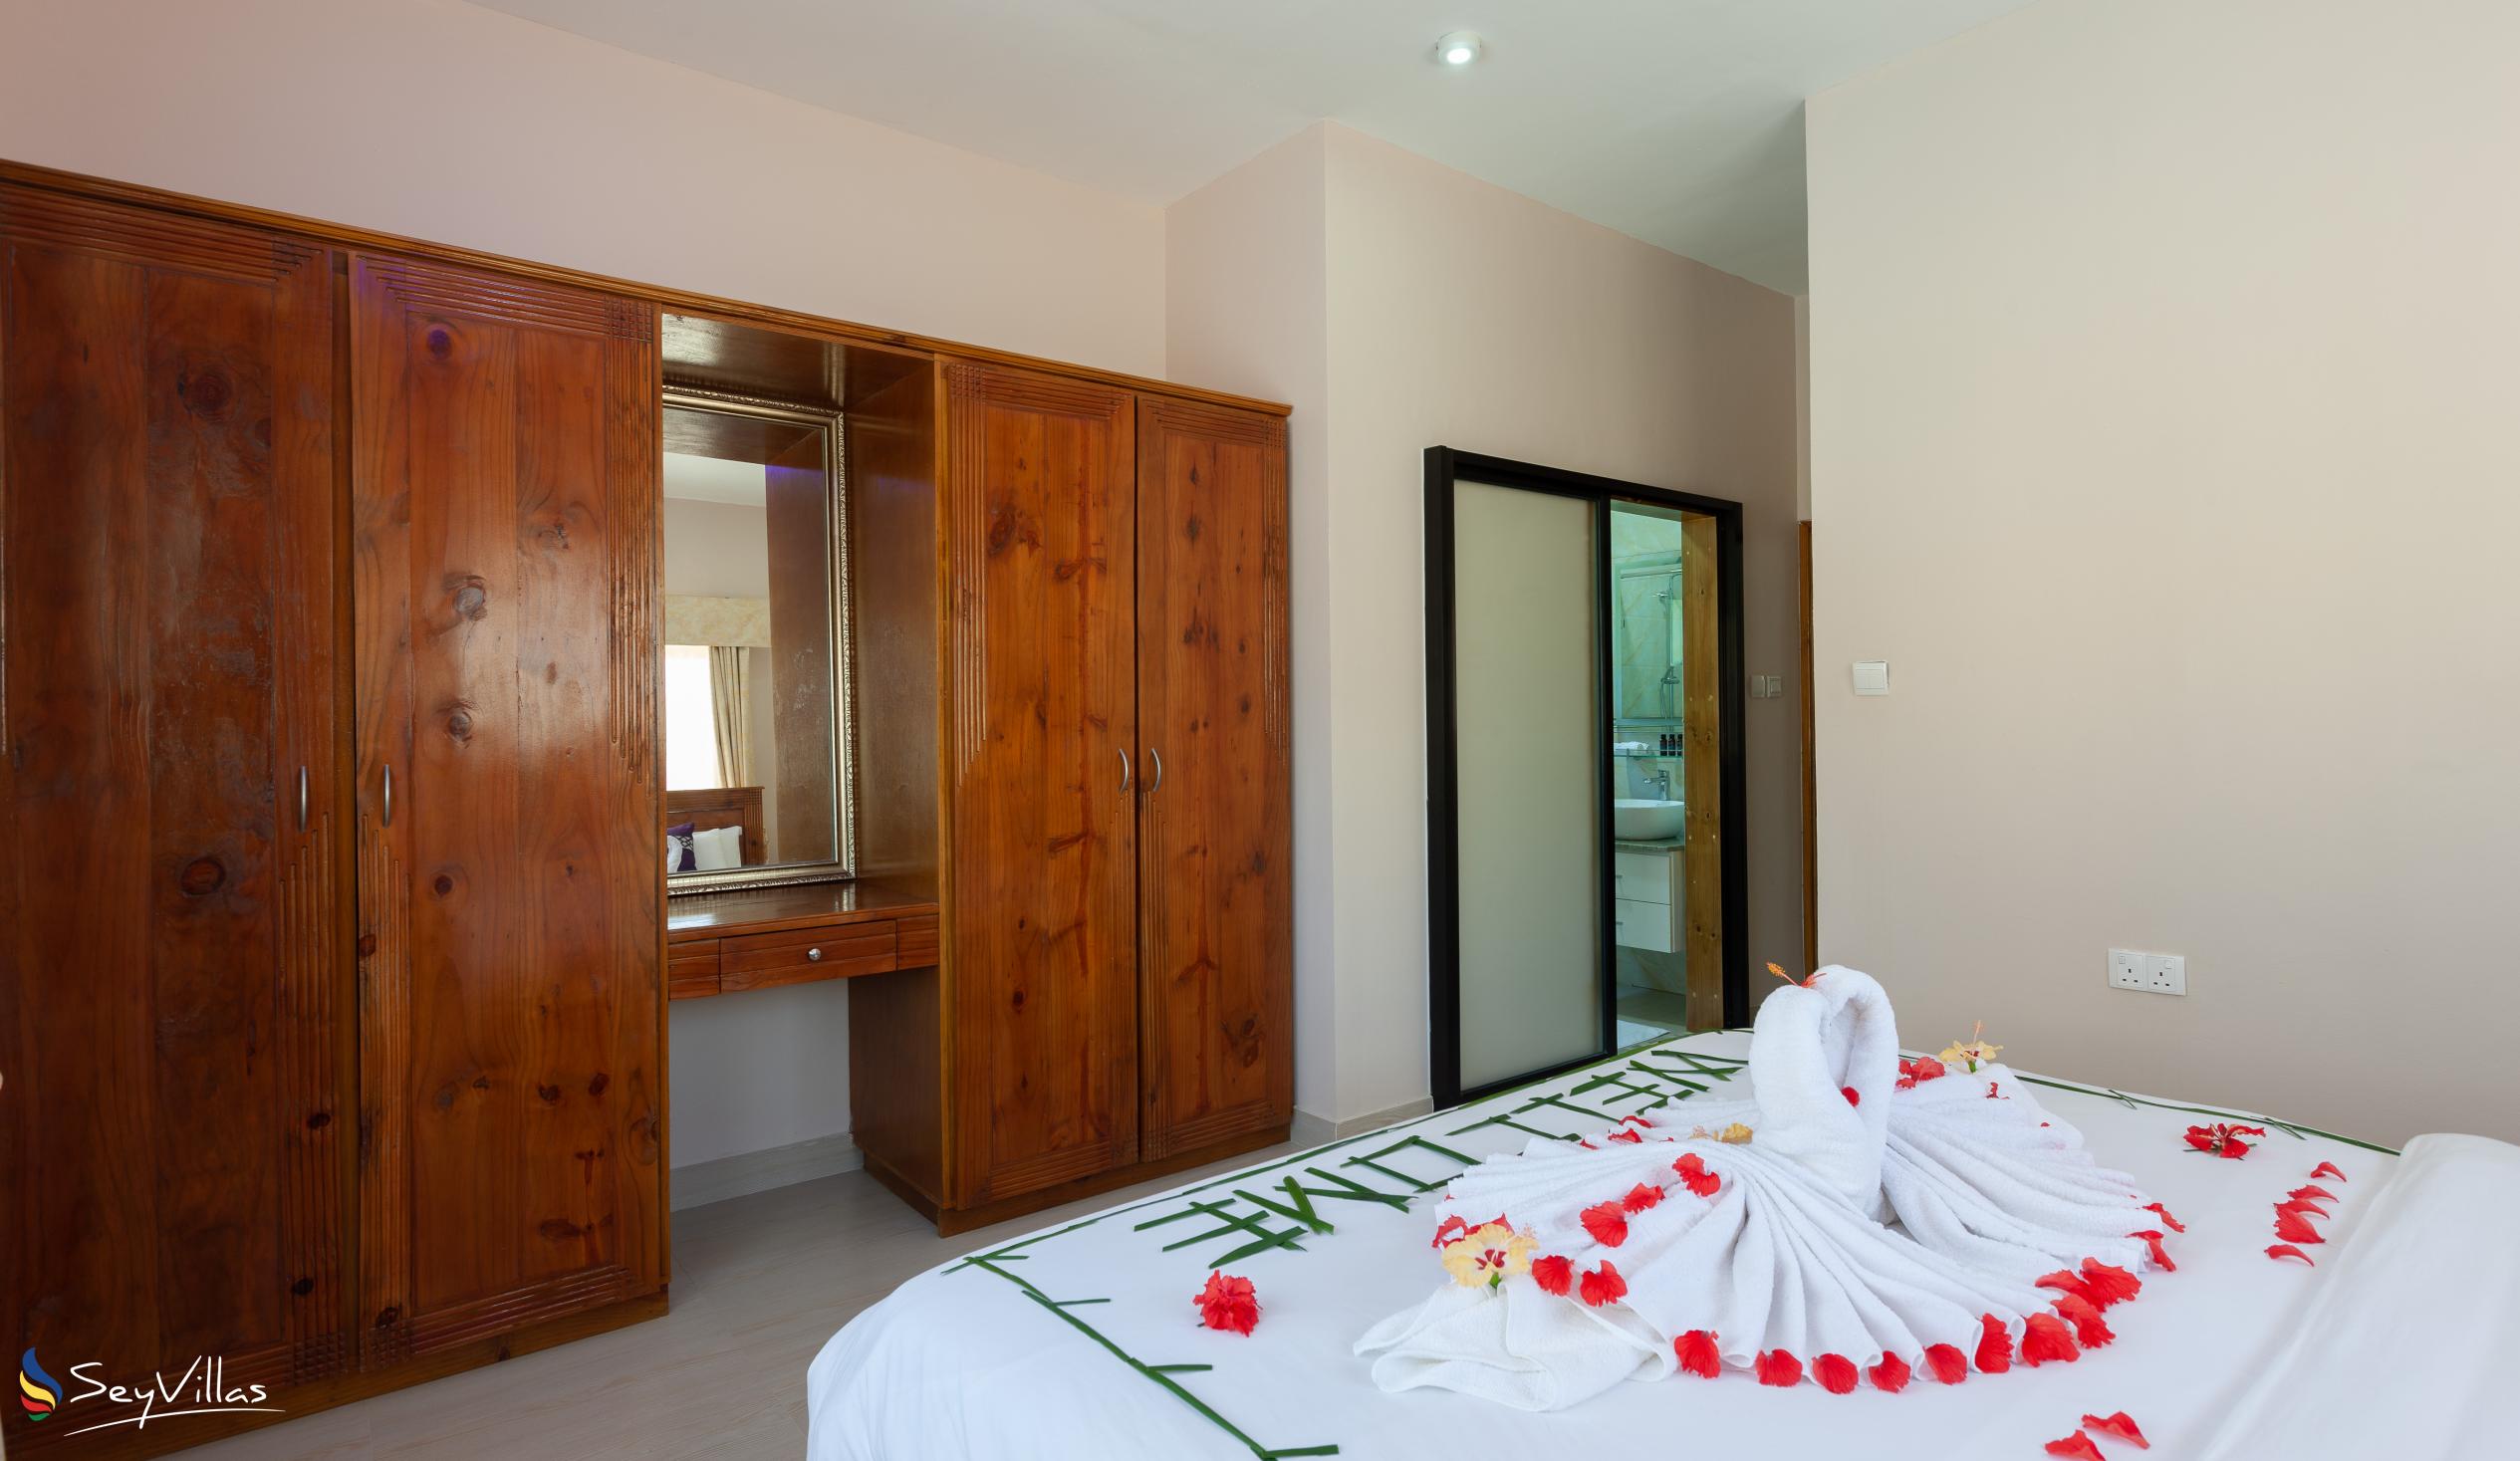 Foto 51: Stone Self Catering Apartments - Appartamento con 2 camere - Praslin (Seychelles)